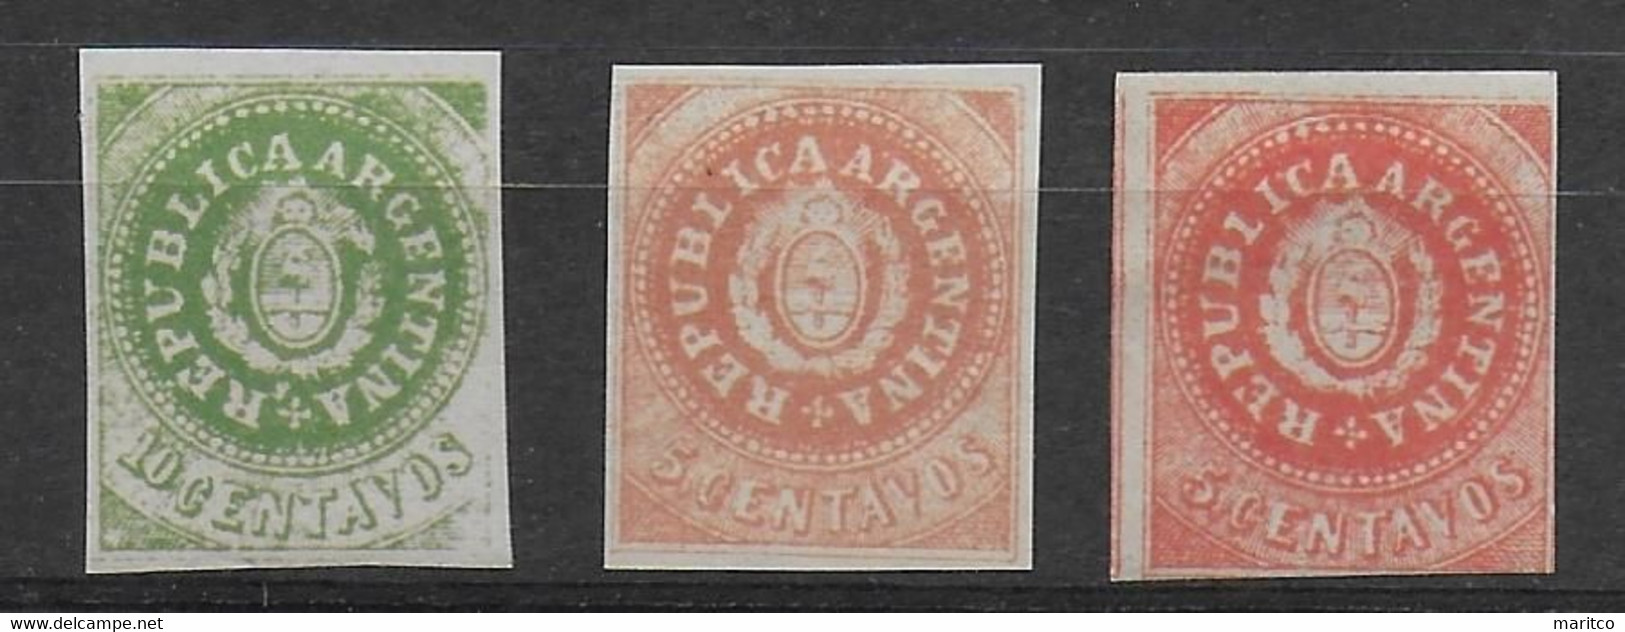 Argentina 1862 - Unused Stamps